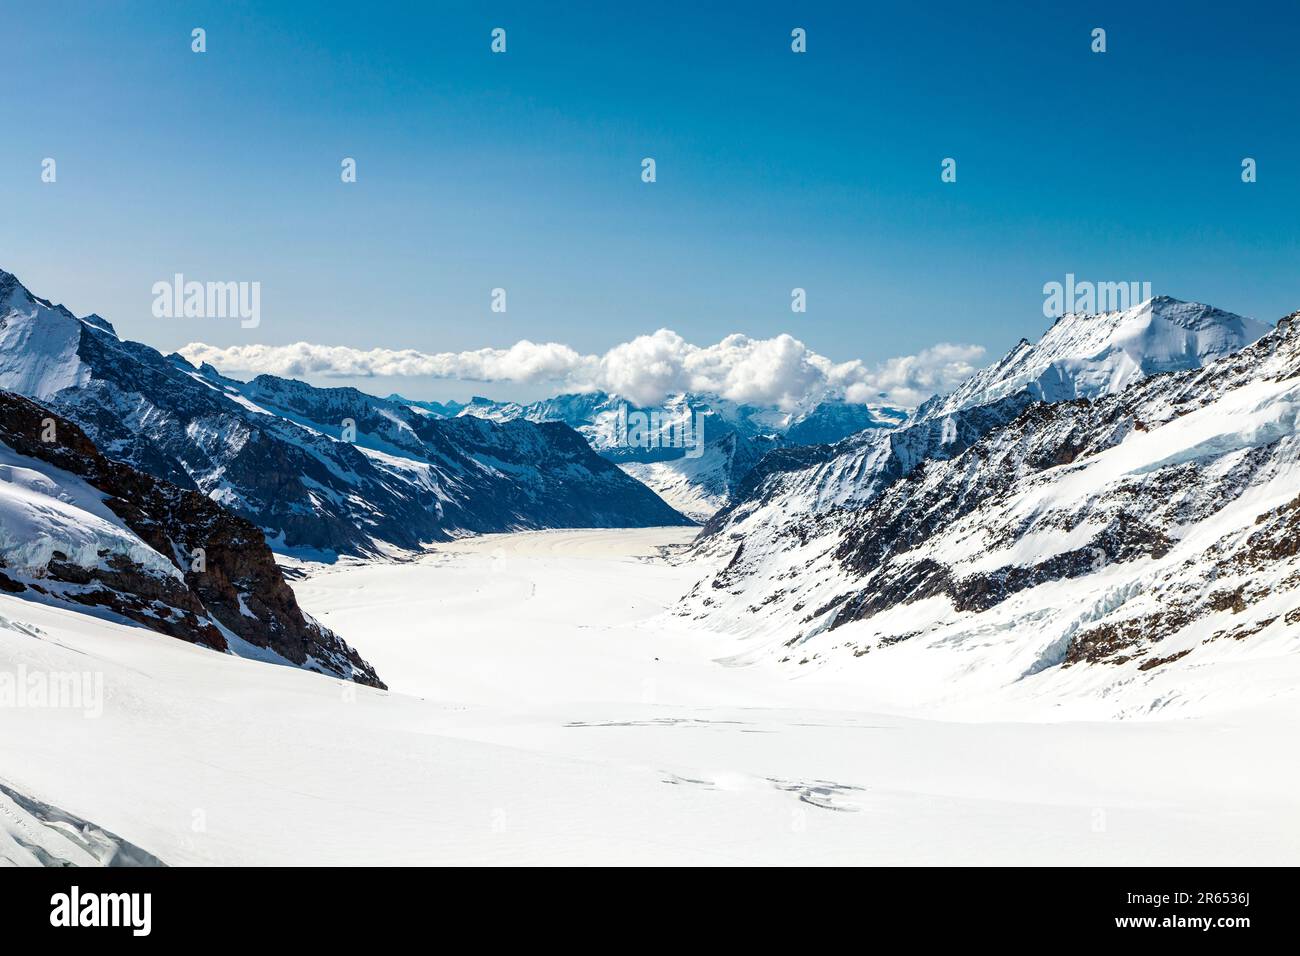 Wanderweg vom Jungfraugipfel zum Mönchsjoch Hut, Blick auf die Berge (Dreieckhorn) und den Aletschgletscher, Schweizer Alpen, Schweiz Stockfoto